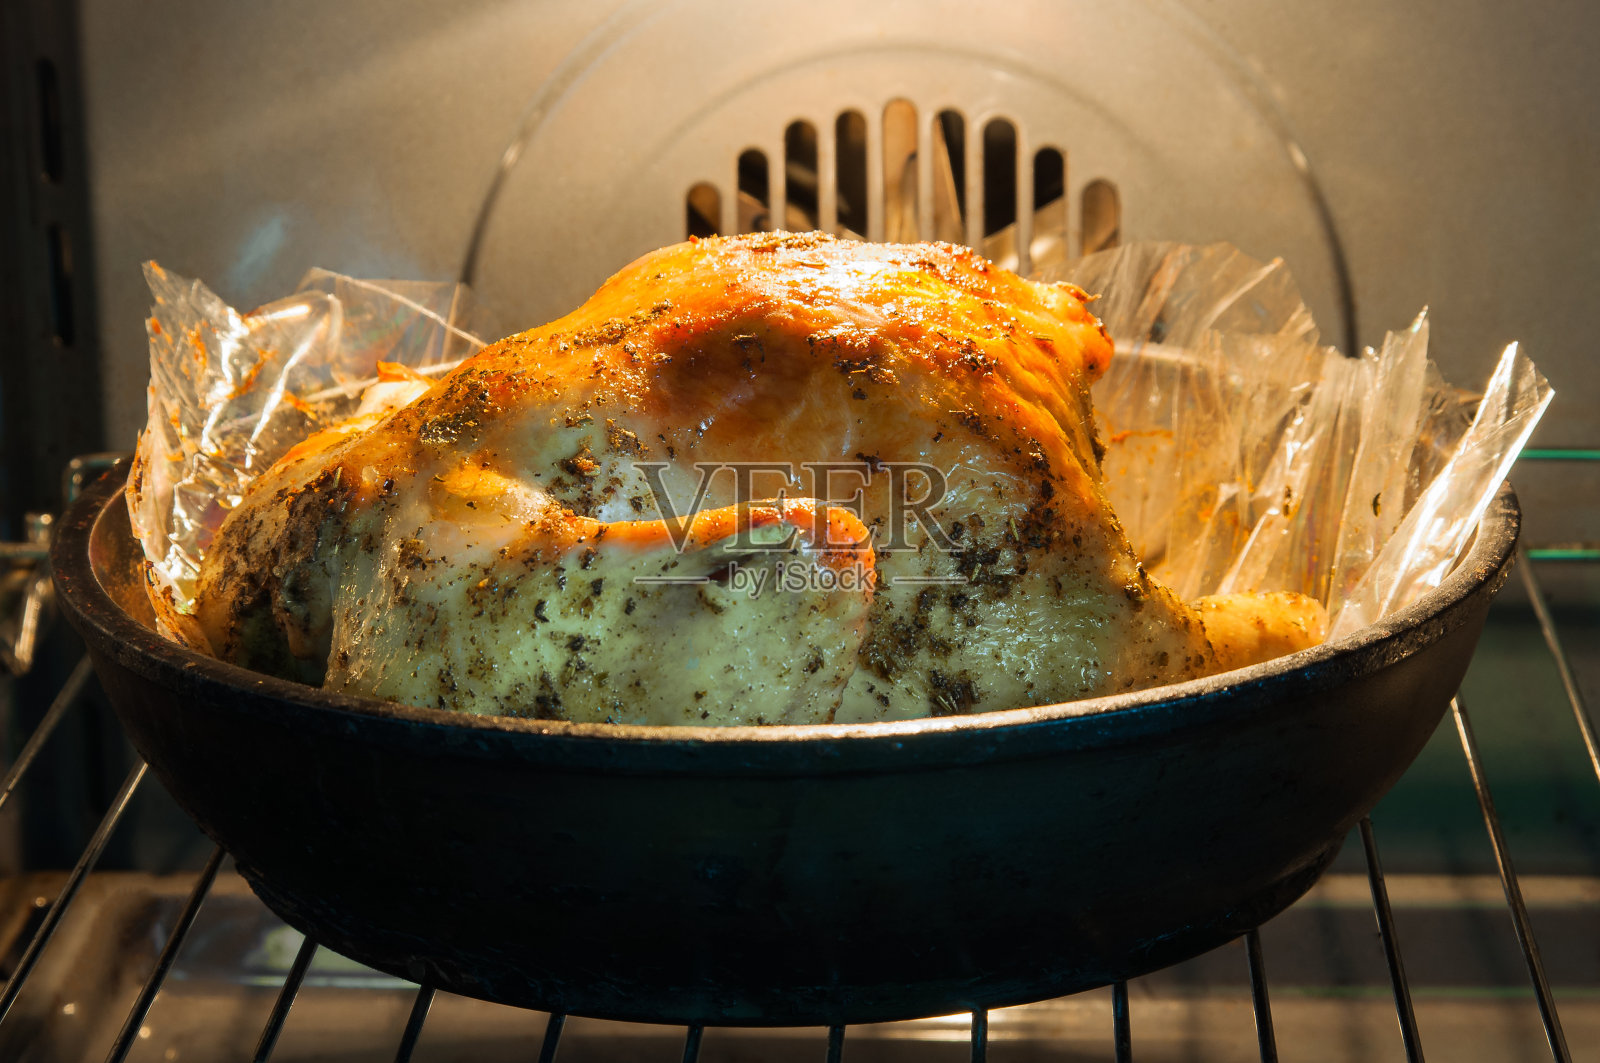 烤箱里令人开胃的烤火鸡照片摄影图片